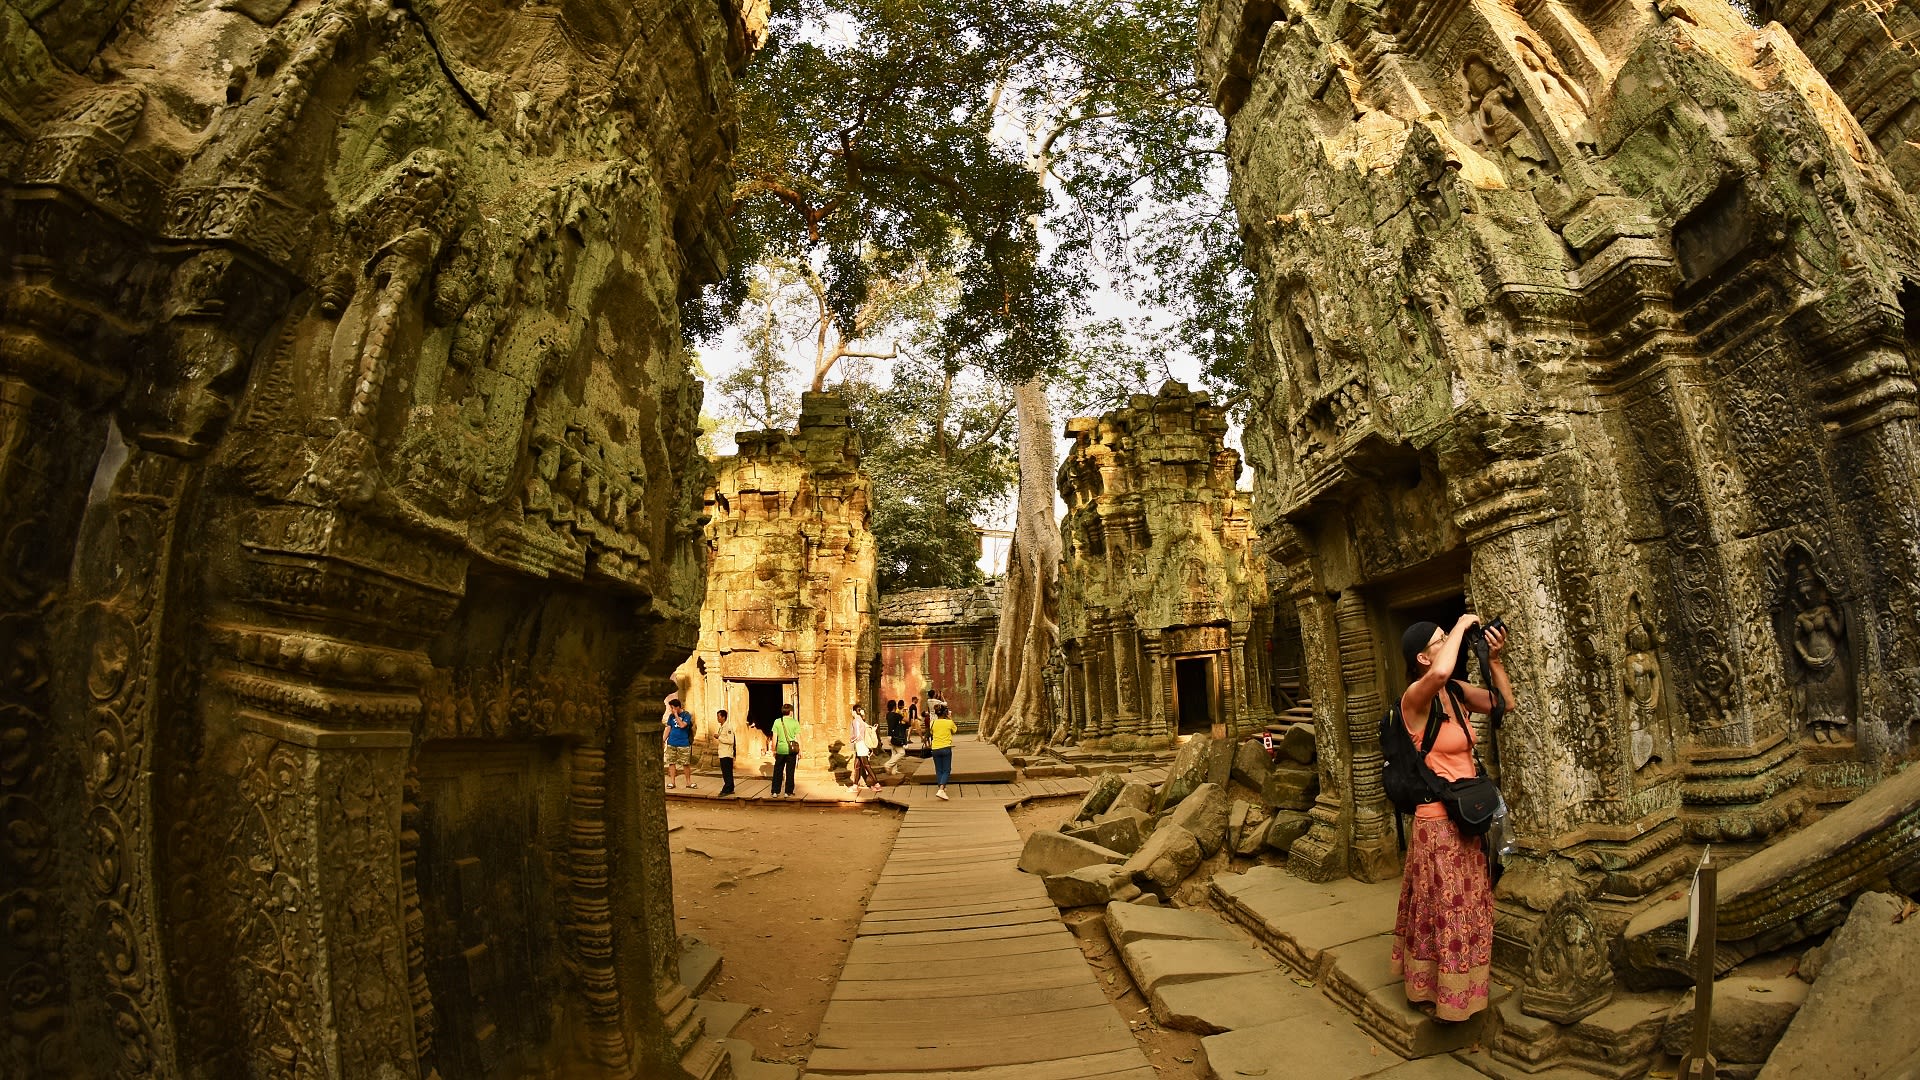 Akgkor Vat - místo, které se snažili Francouzi představit jako svou koloniální pýchu